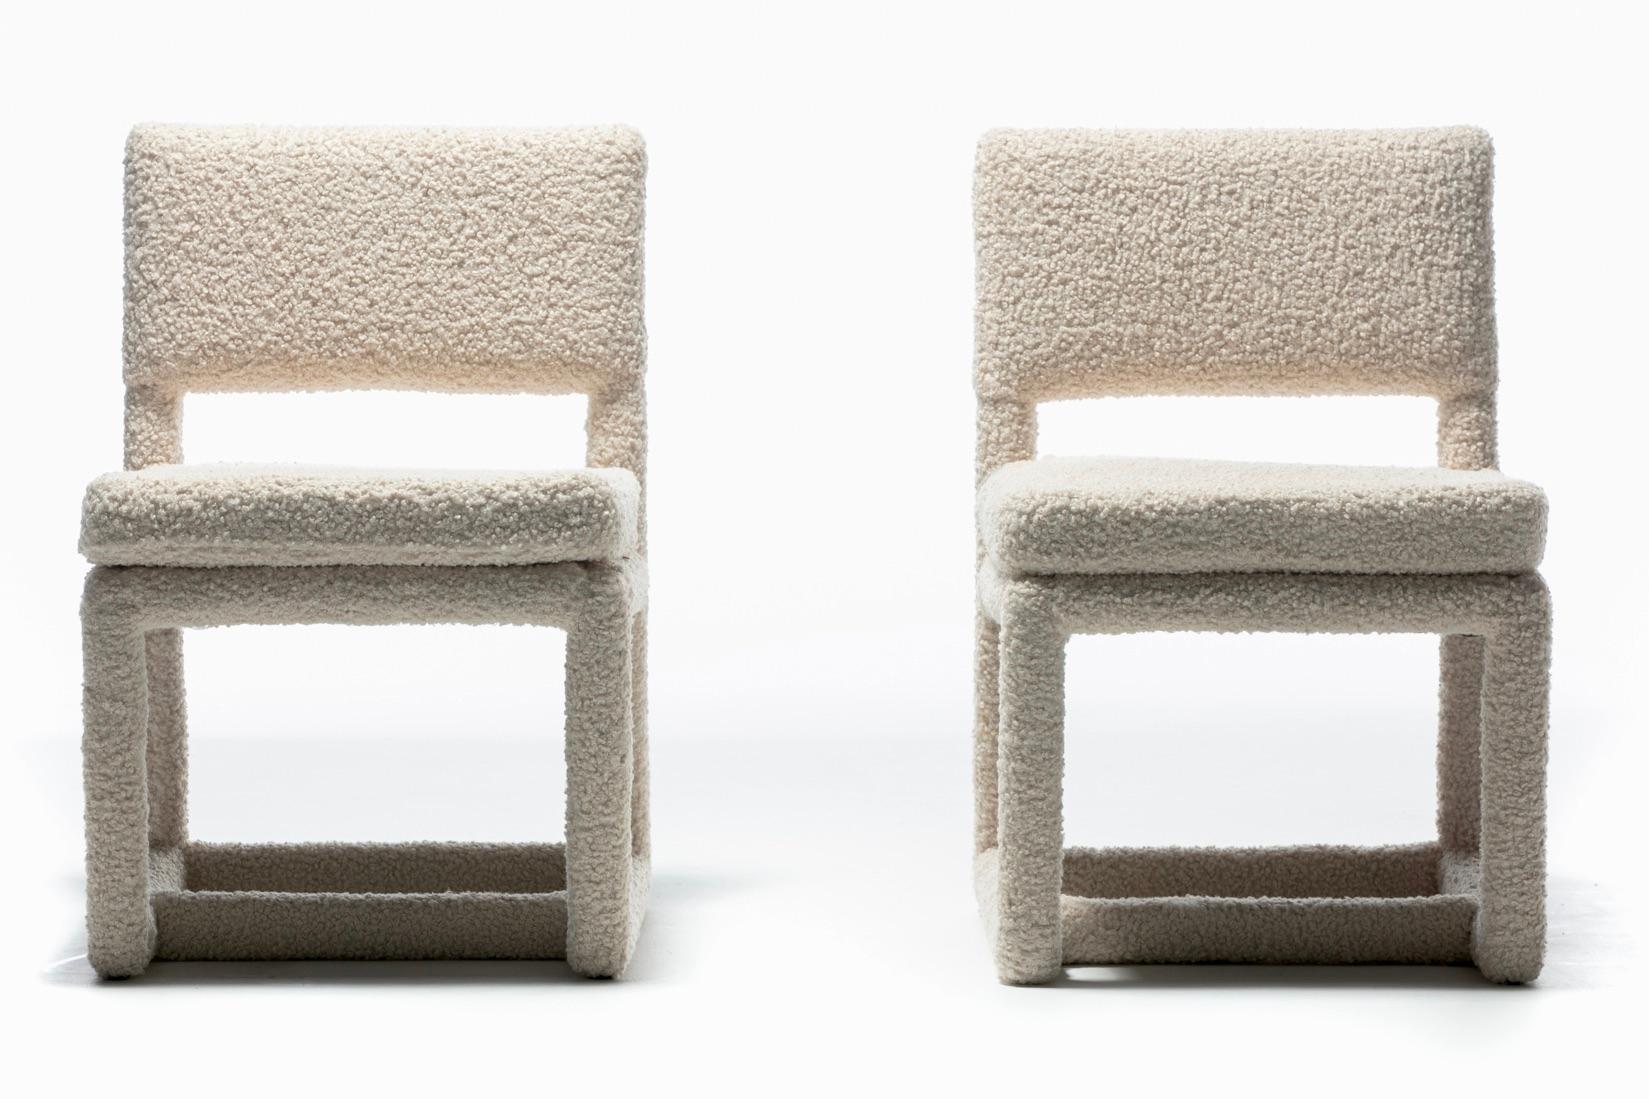 Ensemble sexy de huit chaises de salle à manger Parsons, conçues par Milo Baughman pour Thayer Coggin, nouvellement retapissées par des professionnels en bouclé blanc ivoire doux, jugé très durable (plus de 50 000 doubles frottements). Les chaises